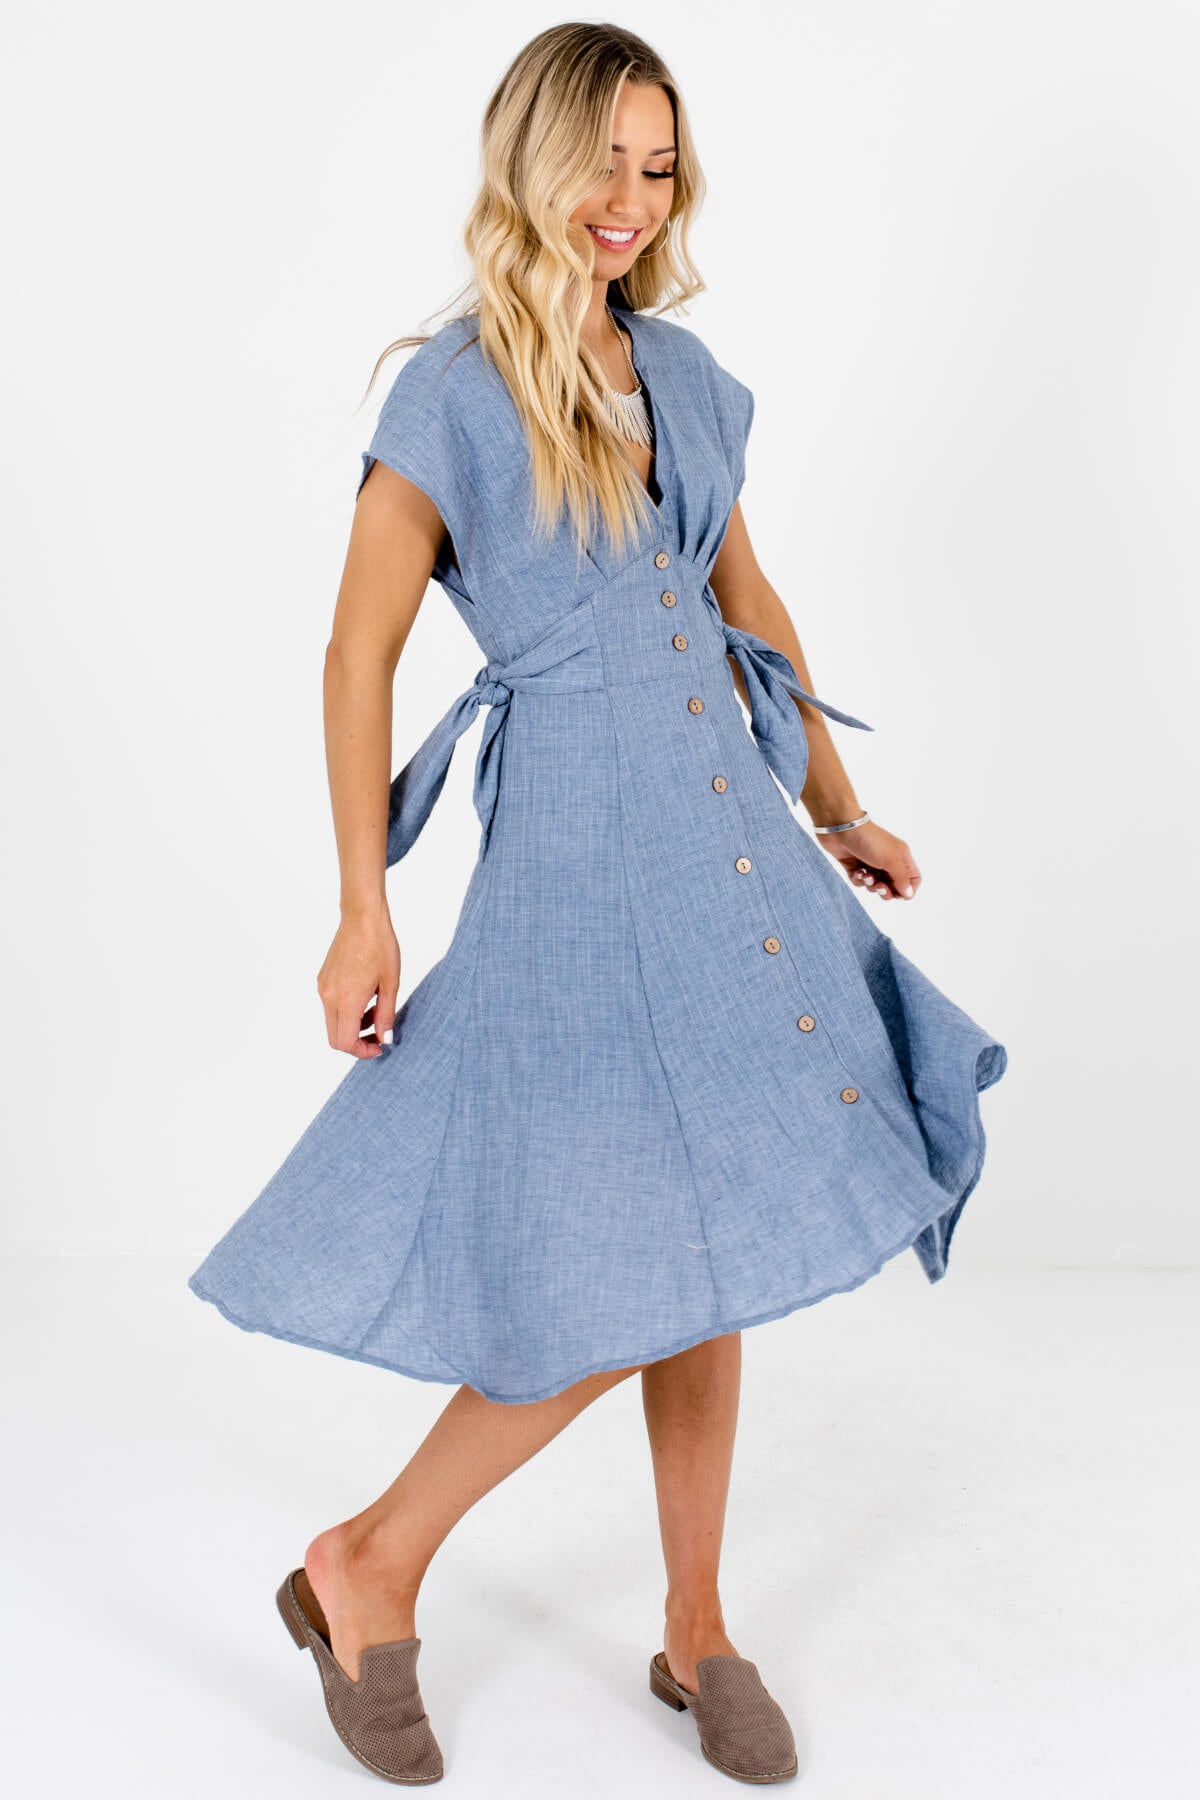 Blue Button-Up Side-Tie Boutique Midi Dresses for Women